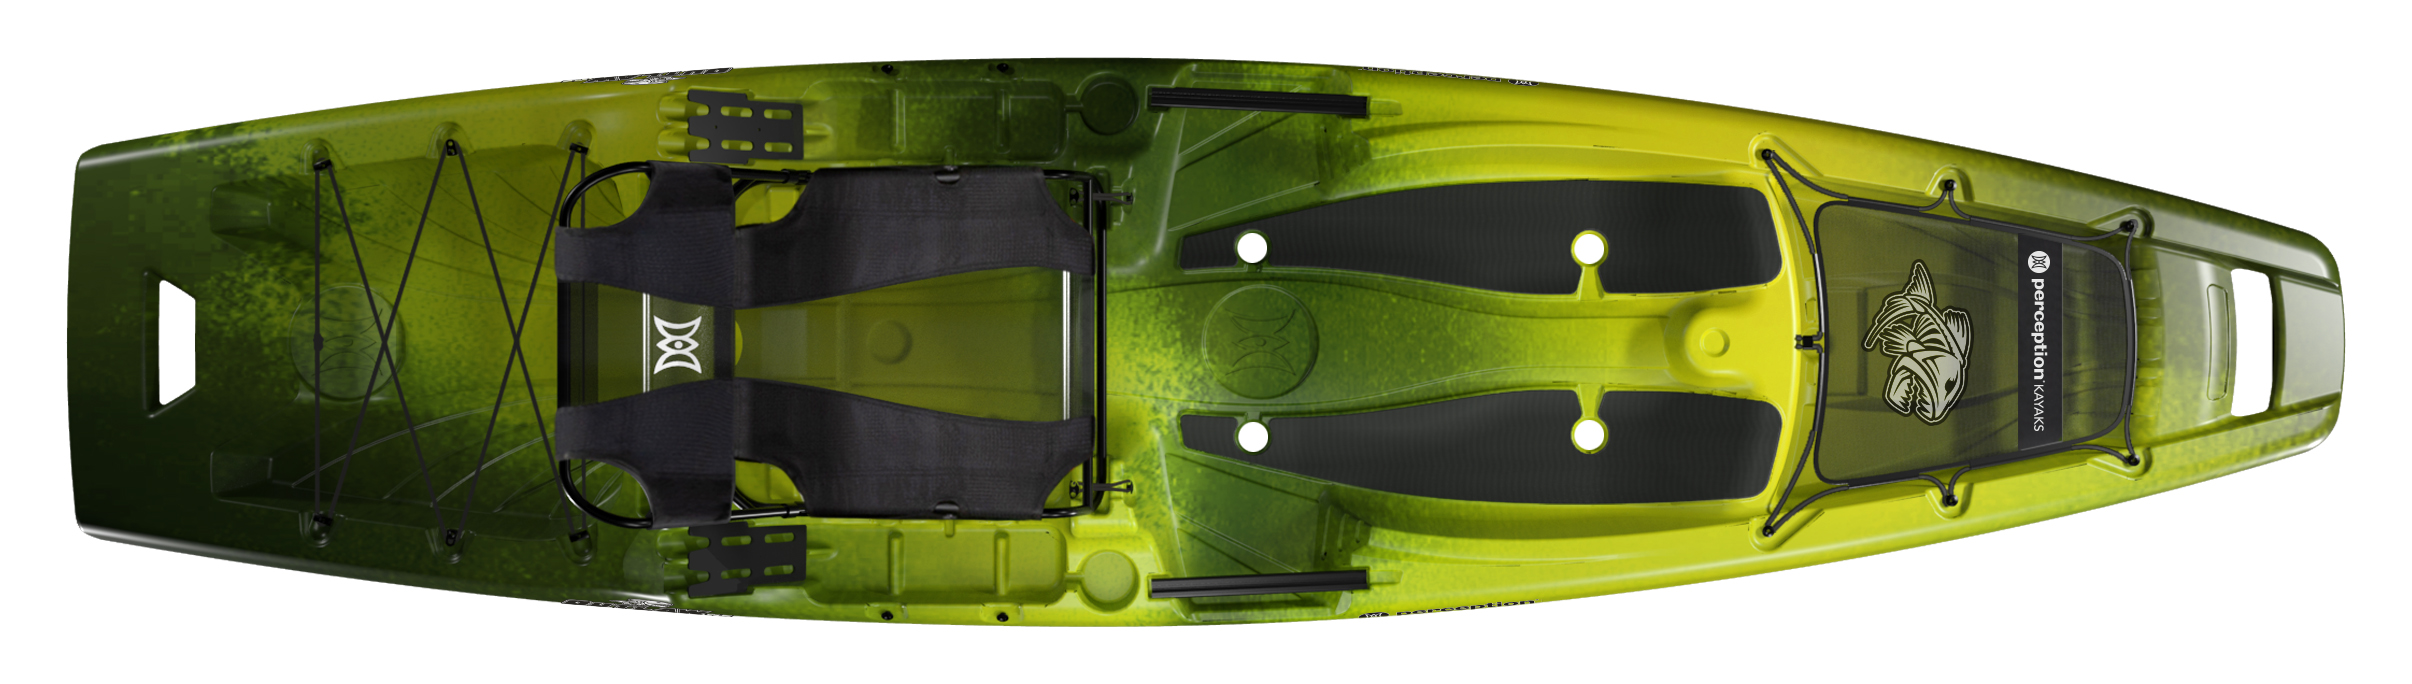 Perception Kayaks, Outlaw 11.5 Fishing Kayak [Paddling Buyer's Guide]